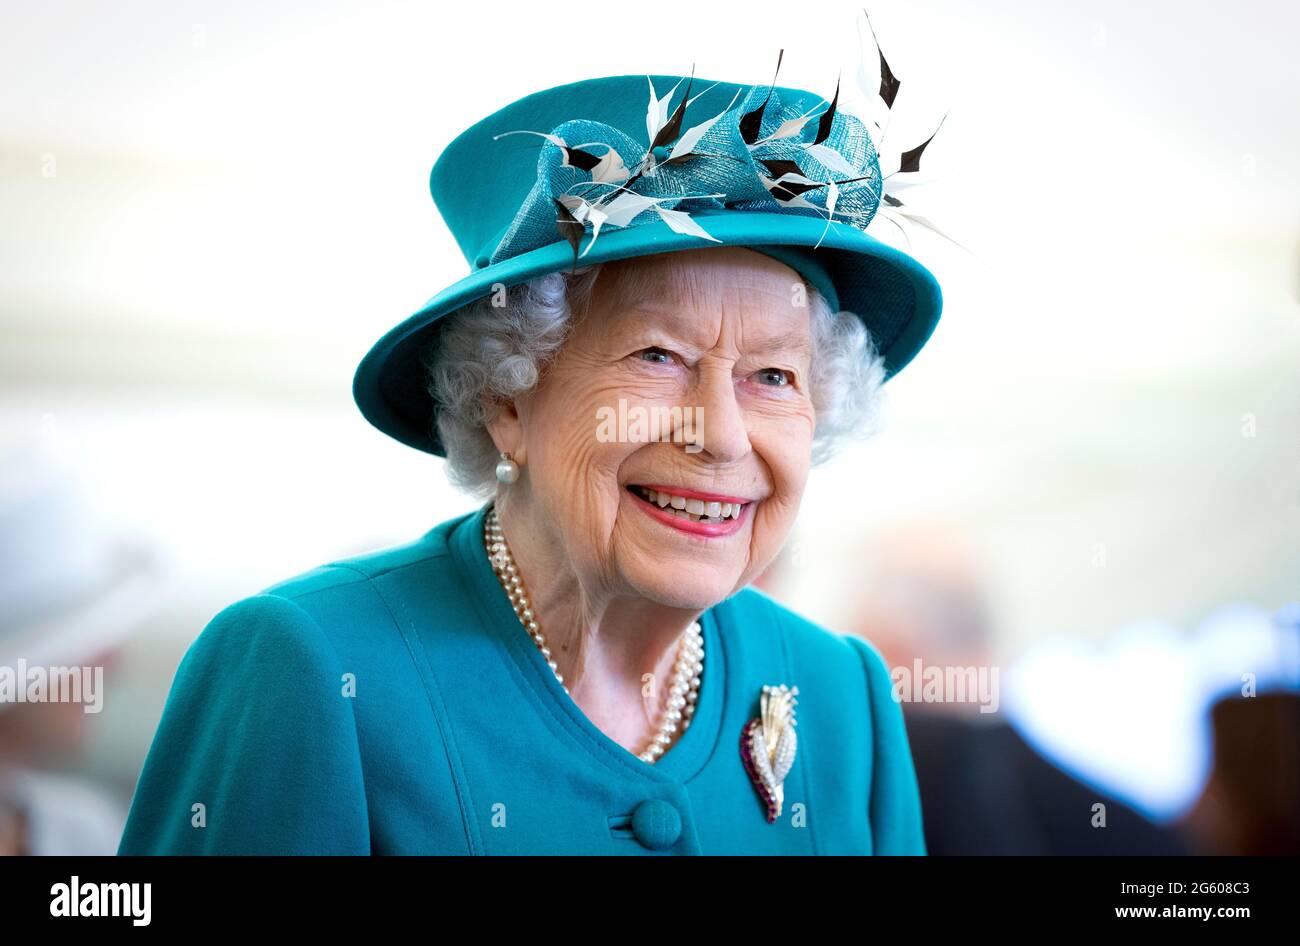 La reine Elizabeth II lors d'une visite à l'Edinburgh Climate change Institute de l'Université d'Édimbourg, dans le cadre de son voyage traditionnel en Écosse pour la Holyrood week. Date de la photo : jeudi 1er juillet 2021. Banque D'Images